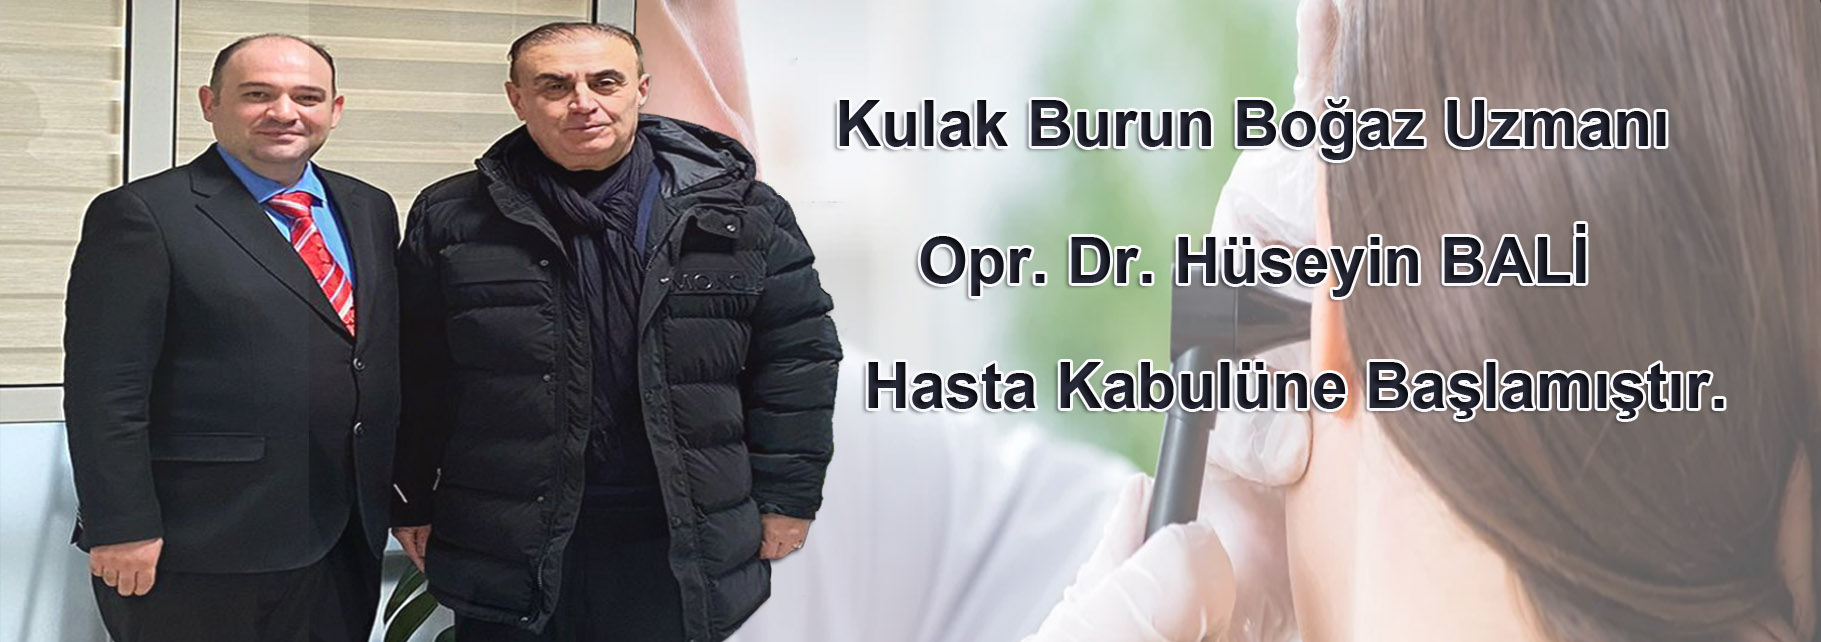 Kulak Burun Boğaz Uzmanı Op. Dr. Hüseyin BALİ Hastanemizde Hasta Kabulüne Başlamıştır.